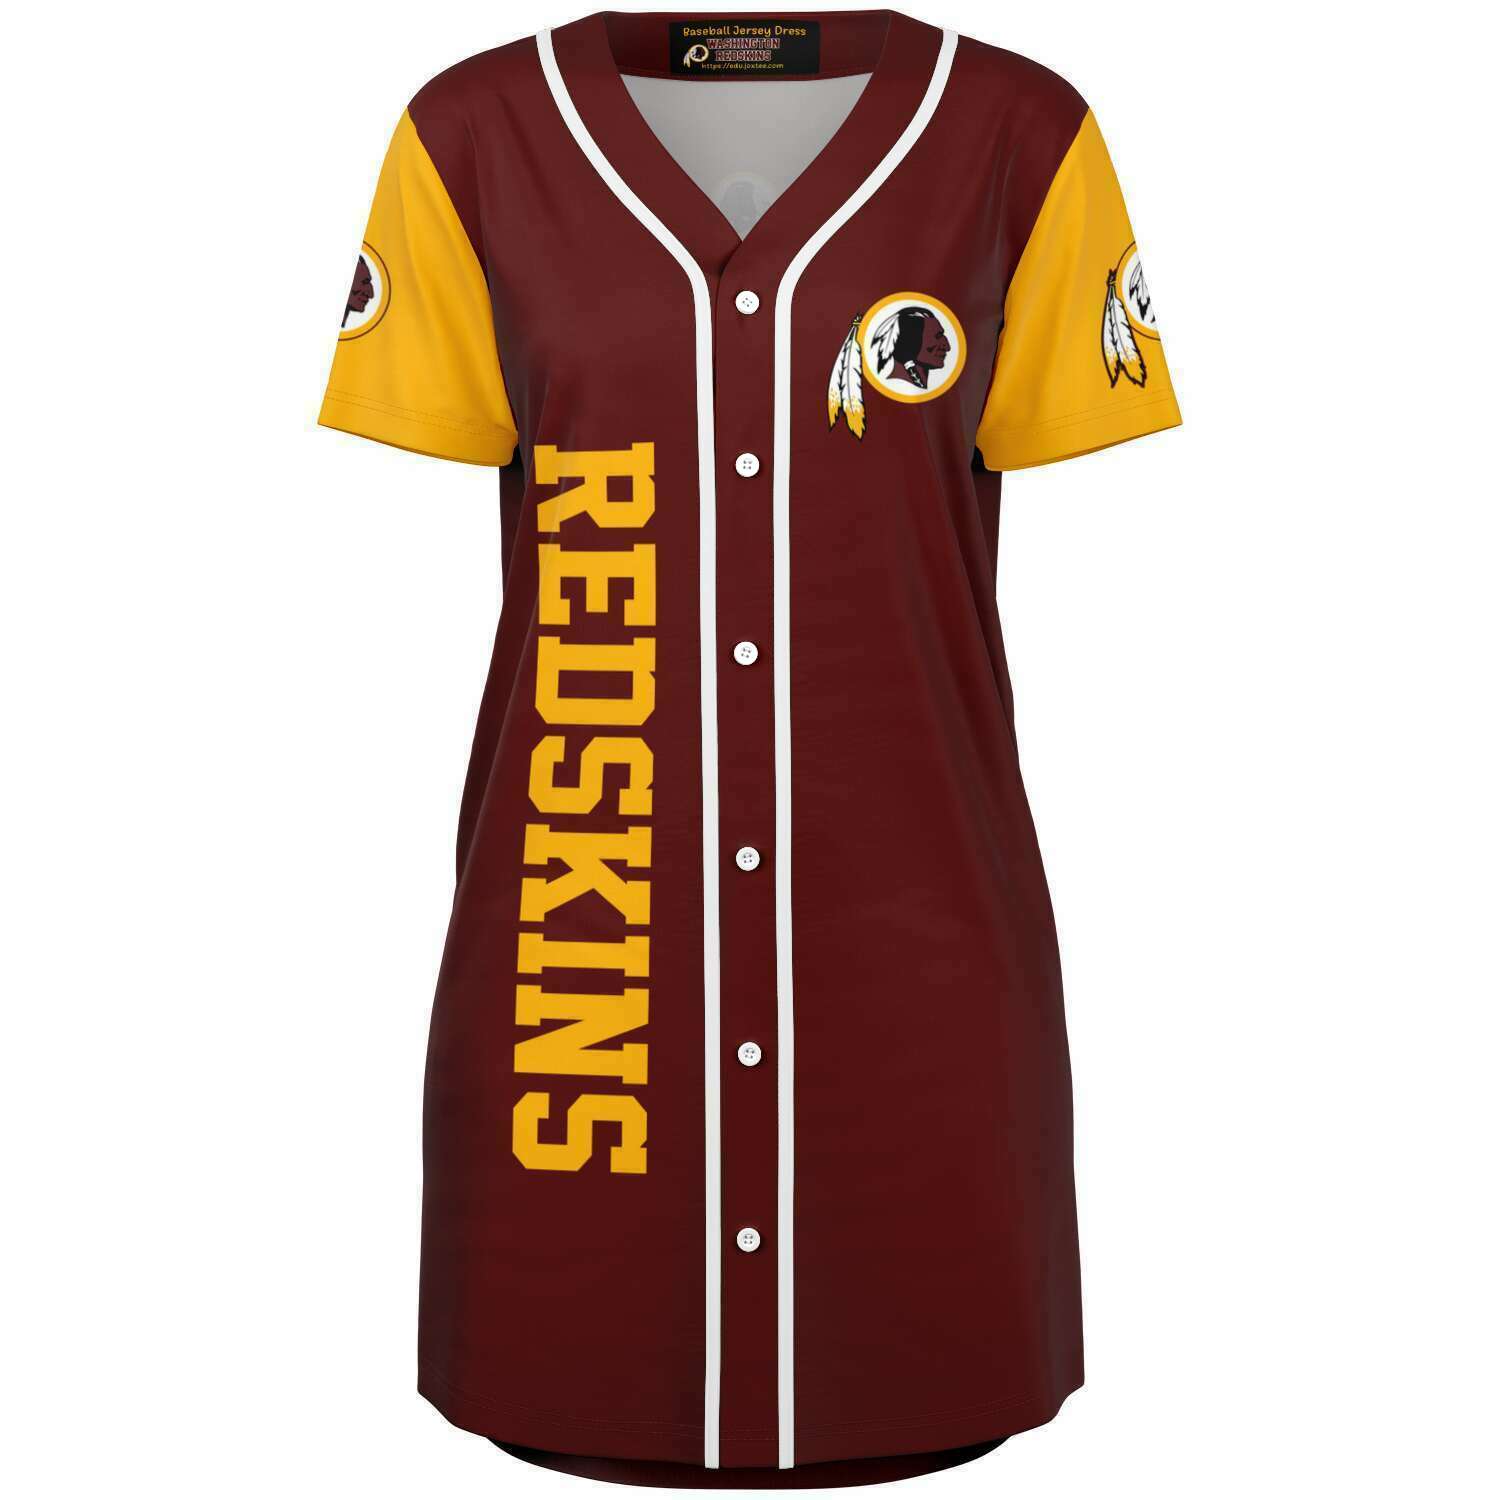 Southern Jaguars Baseball Jersey Dress v4132 - joxtee